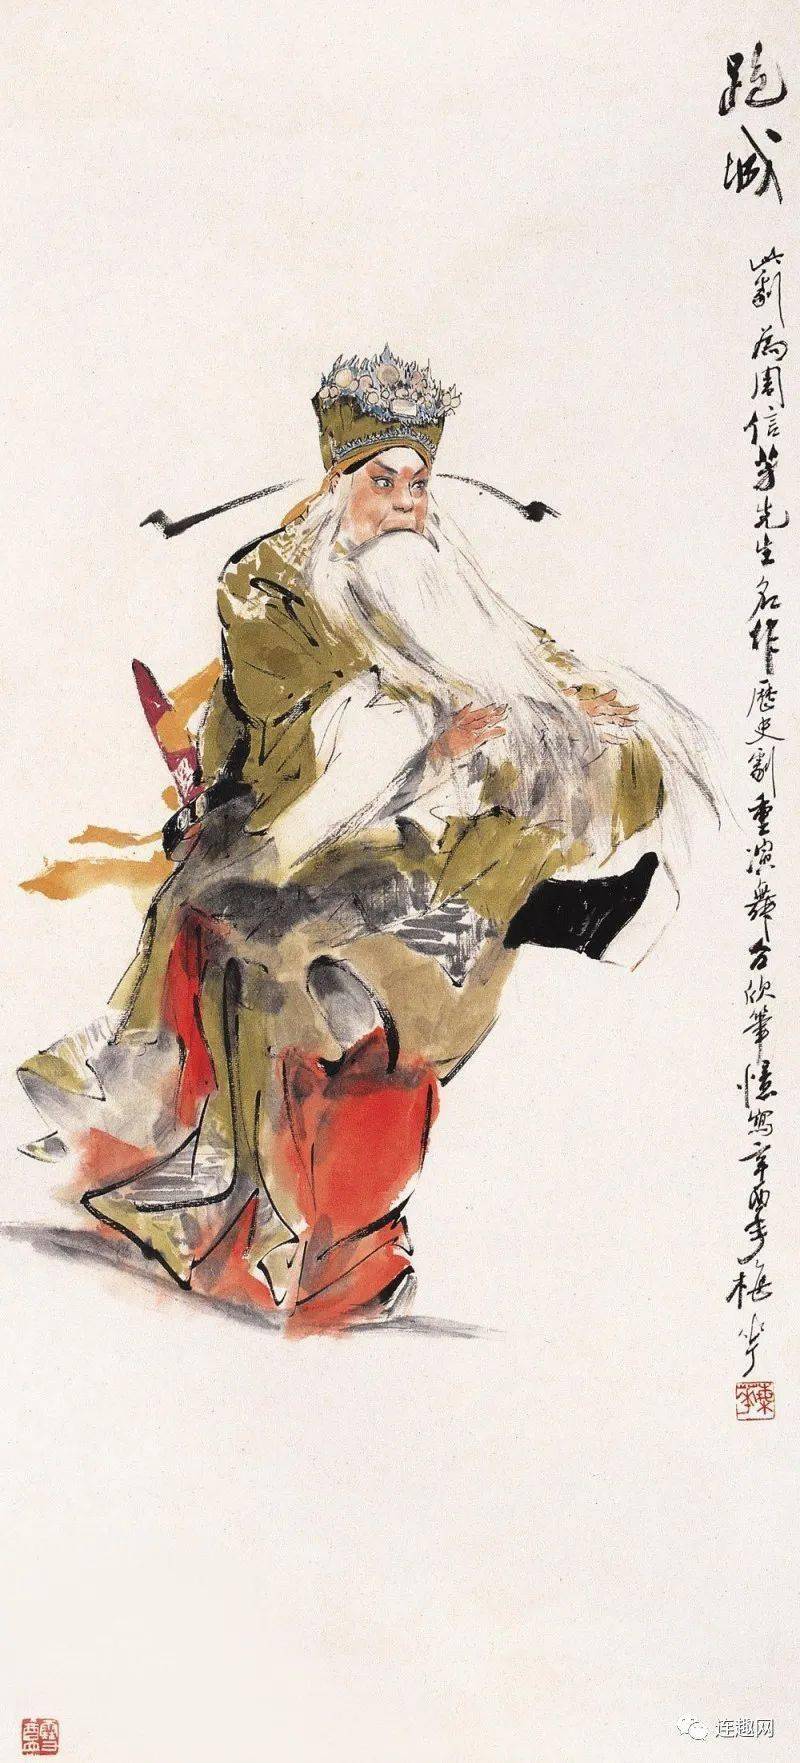 海派画坛元老,著名画家颜梅华先生驾鹤西去,享年九十六岁